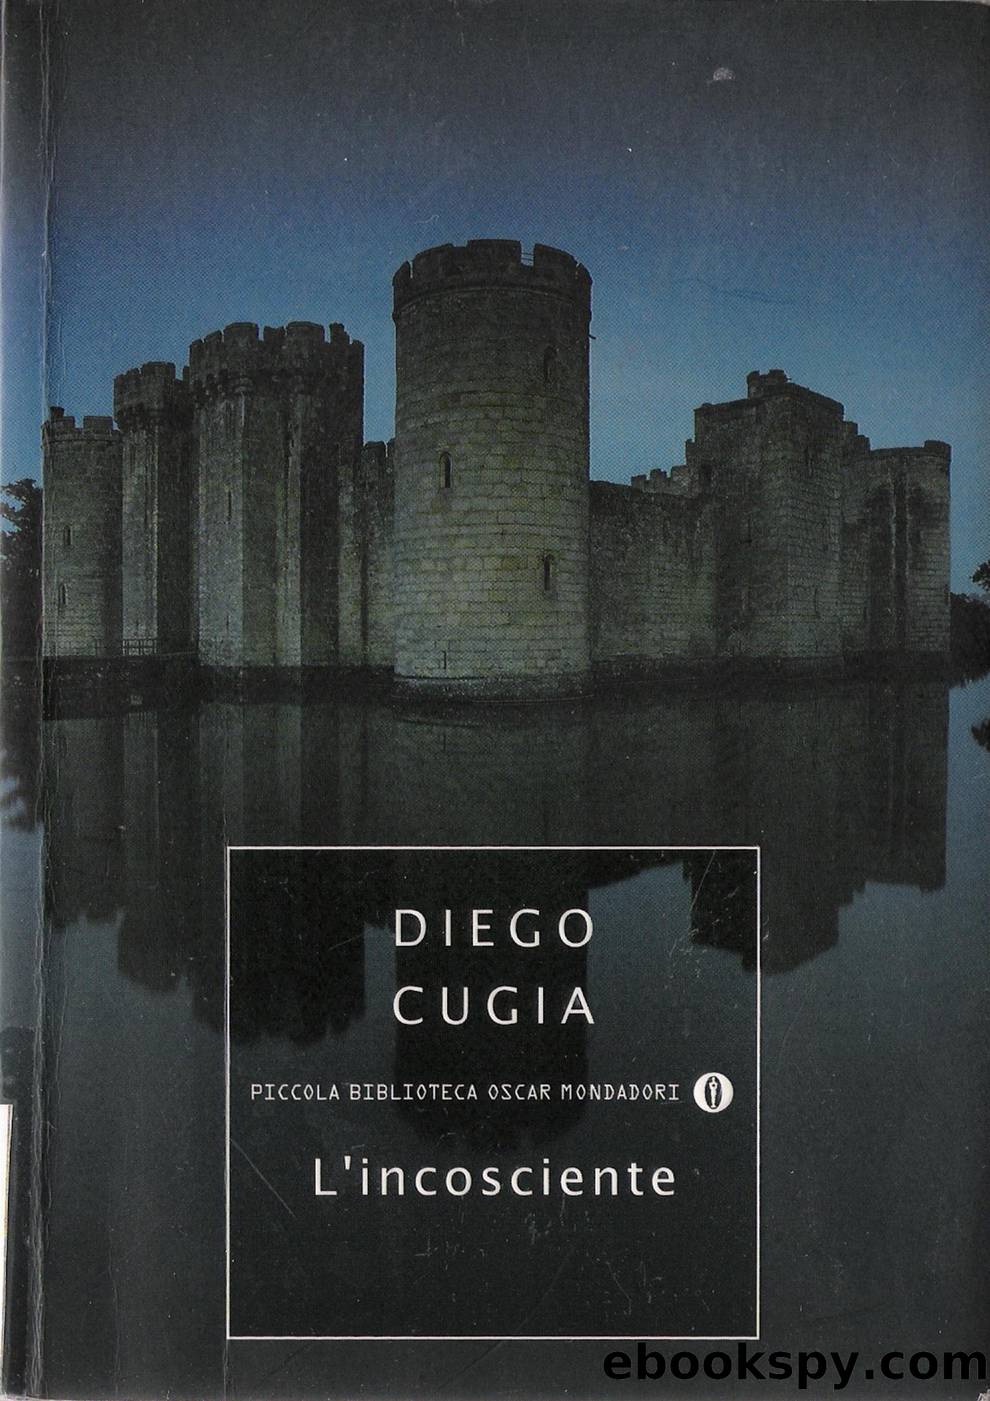 L'incosciente by Diego Cugia